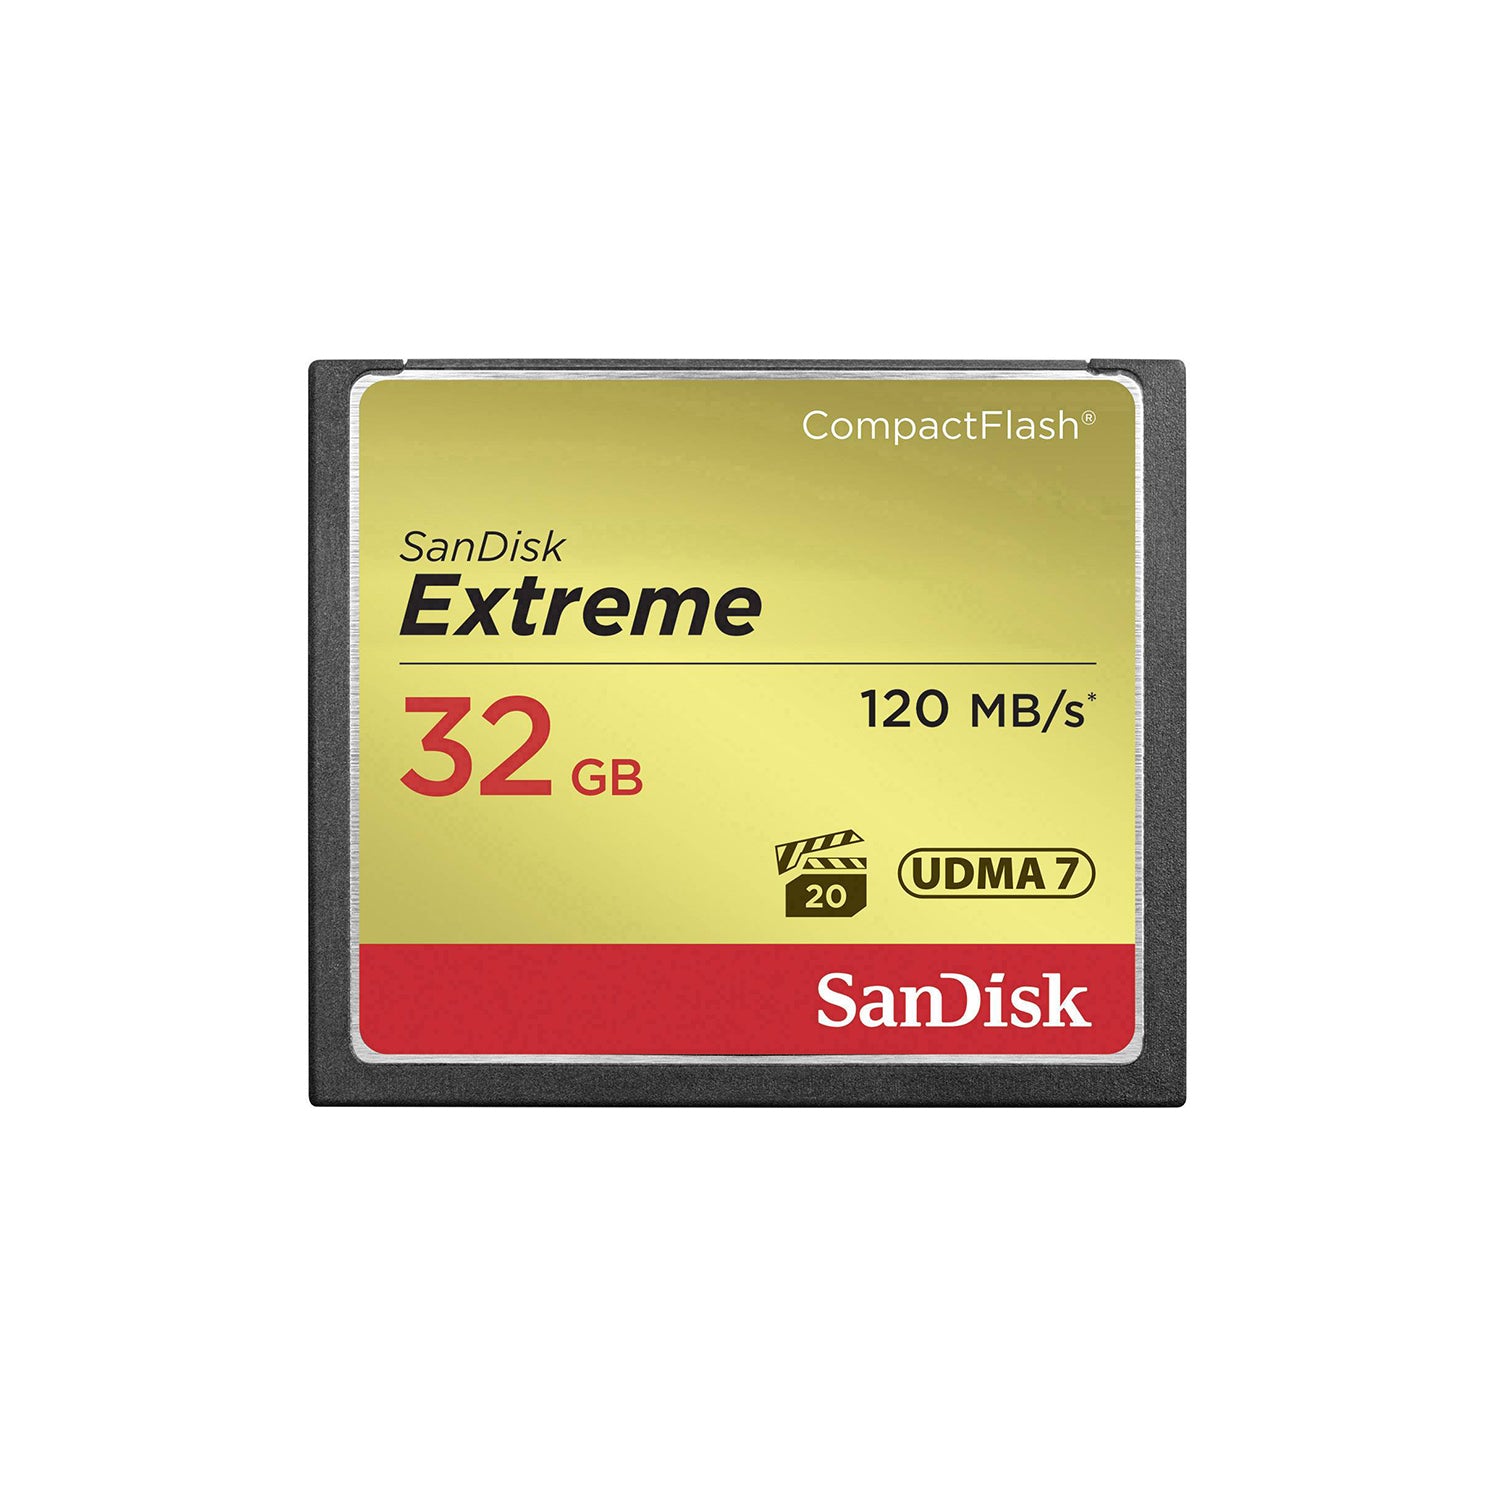 Sandisk Extreme CompactFlash CF Card 32GB UDMA 7 120mbps